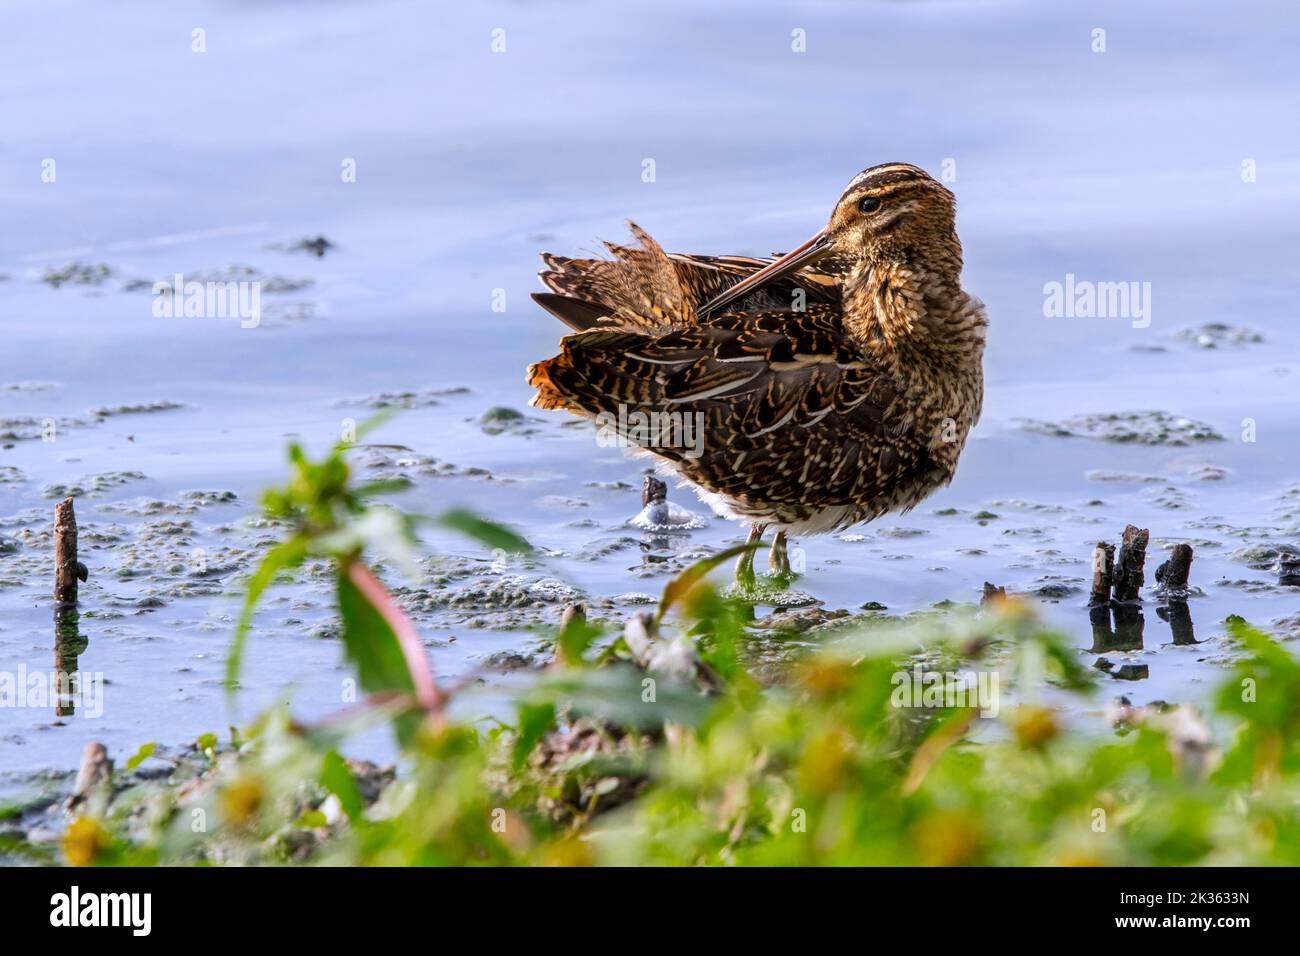 Gewöhnliche Schnepfe (Gallinago gallinago), die Federn im seichten Wasser des Sees / Teiches ausbrütet Stockfoto